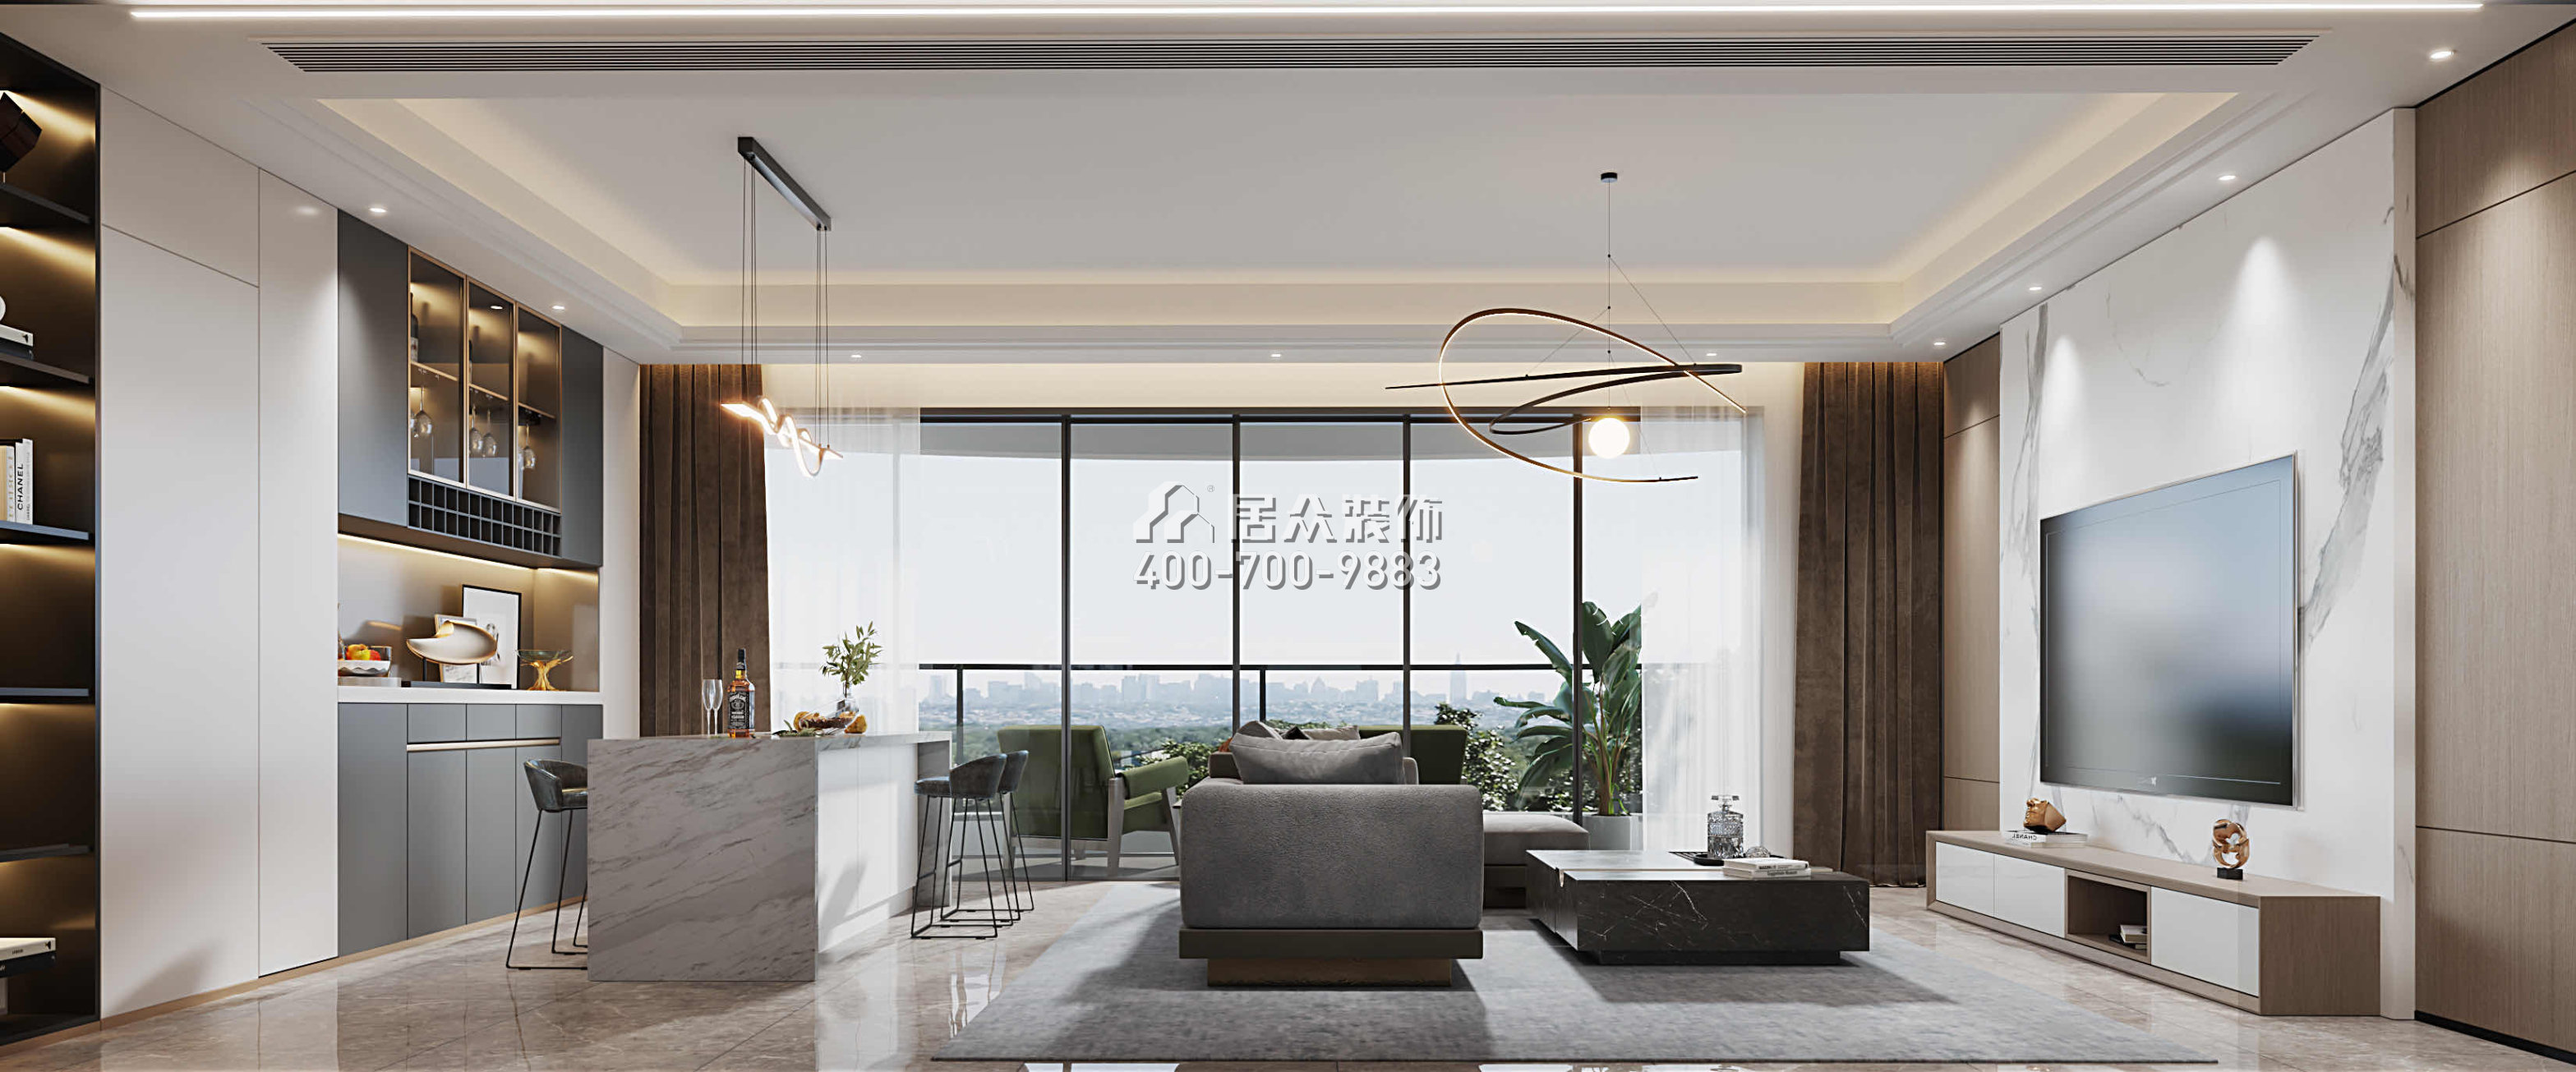 華發綠洋灣191平方米現代簡約風格平層戶型客廳裝修效果圖